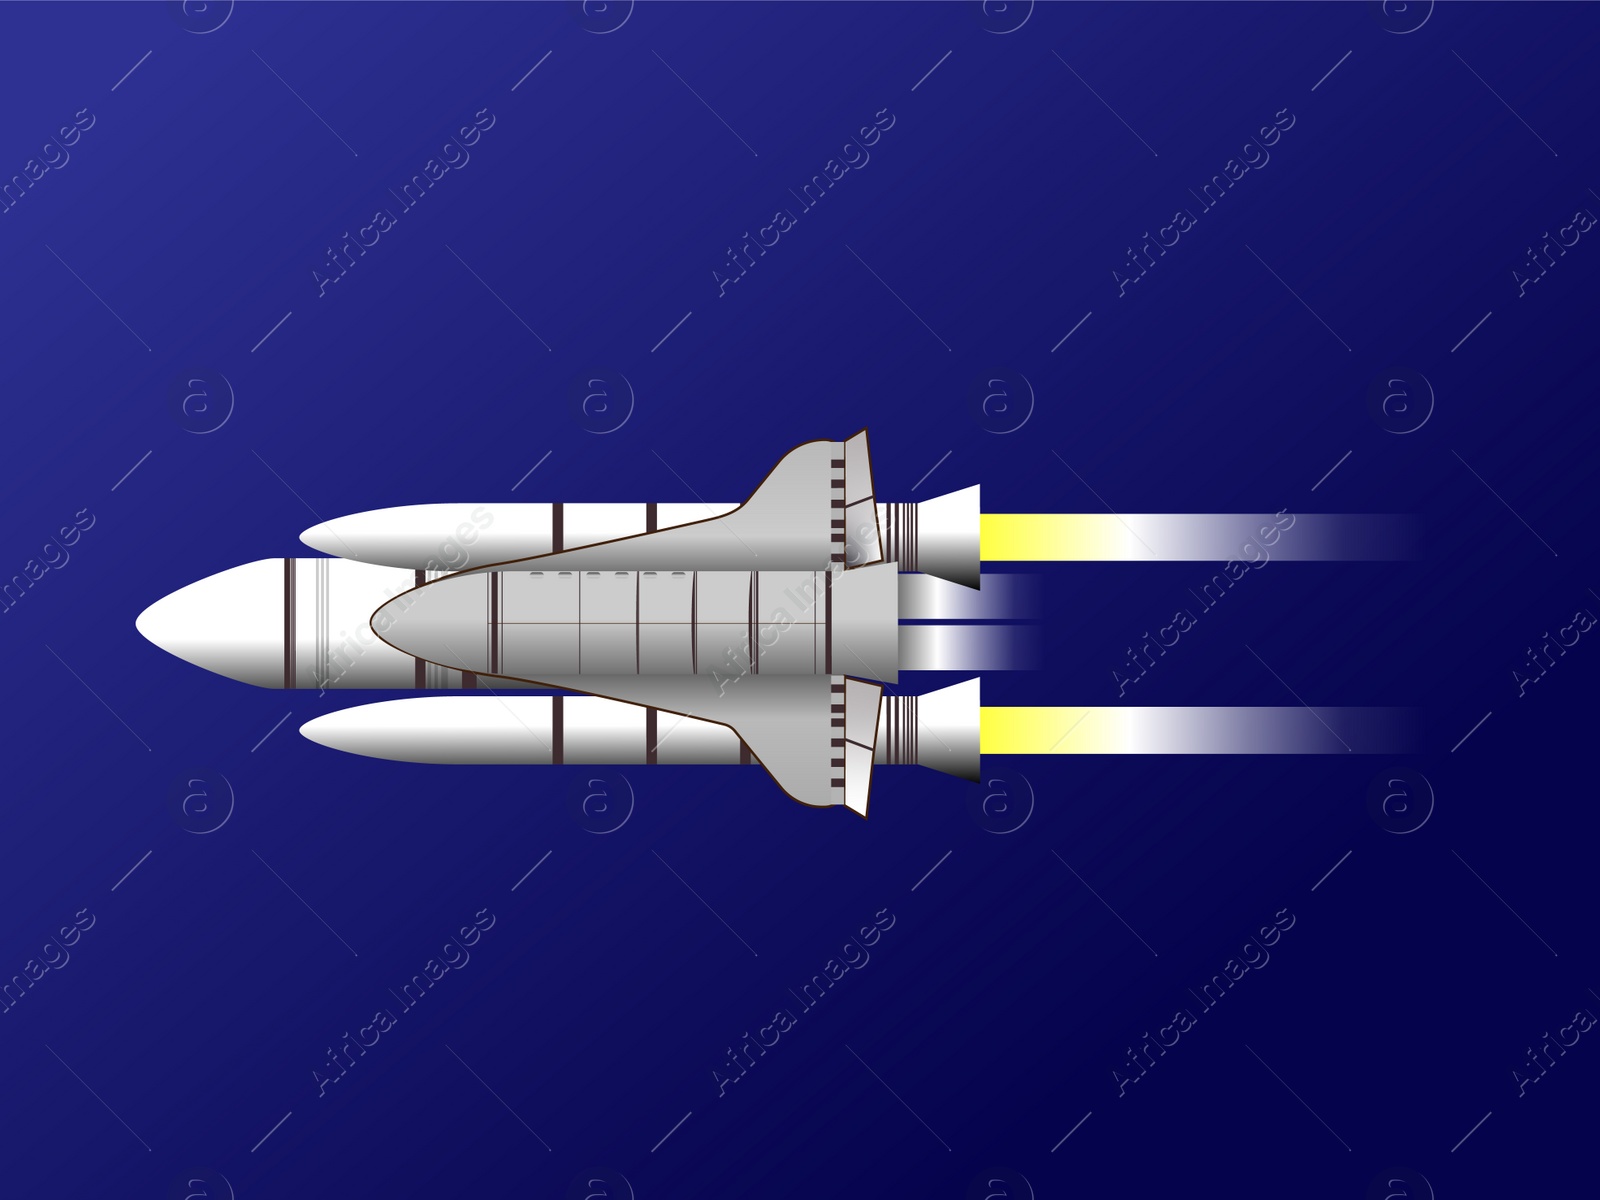 Illustration of Modern rocket model illustration on blue background